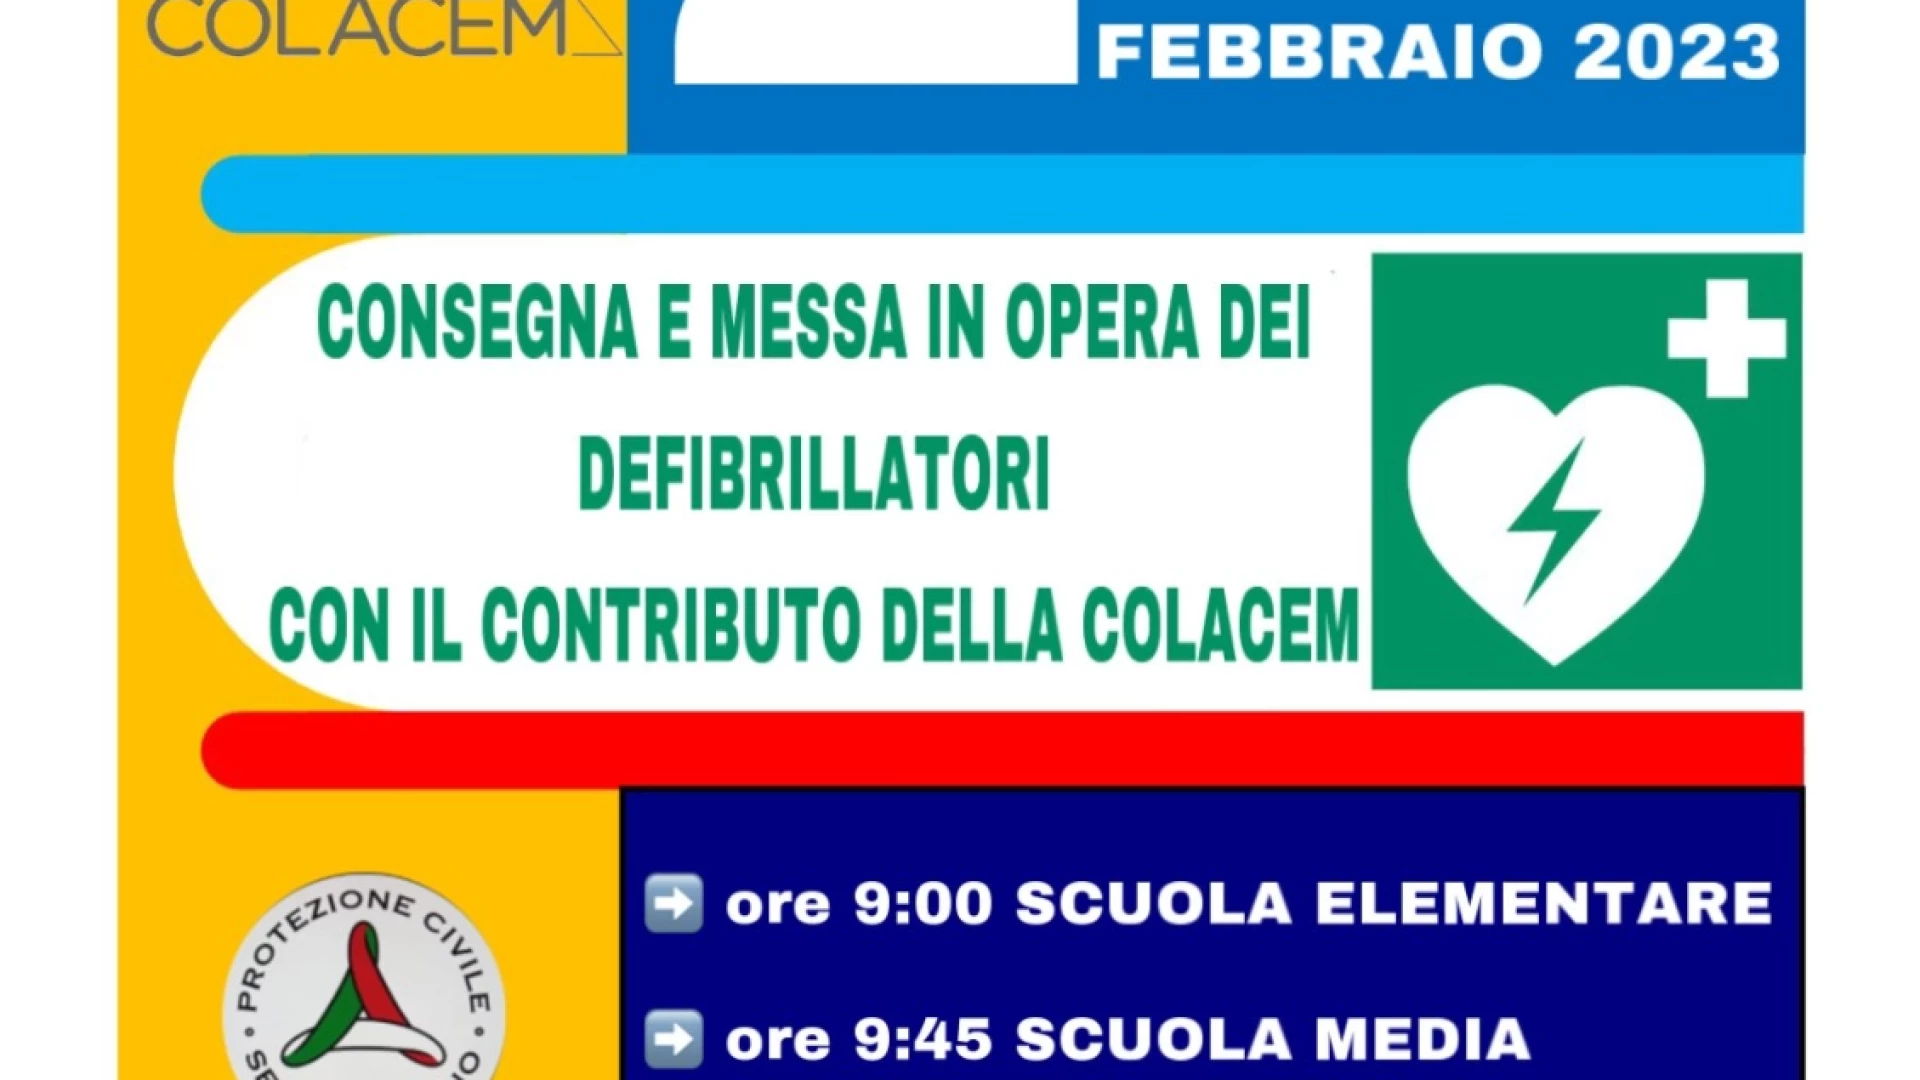 Sesto Campano: giovedì 2 febbraio la cerimonia di consegna e messa in opera dei defibrillatori acquistato con il contributo della Colacem.